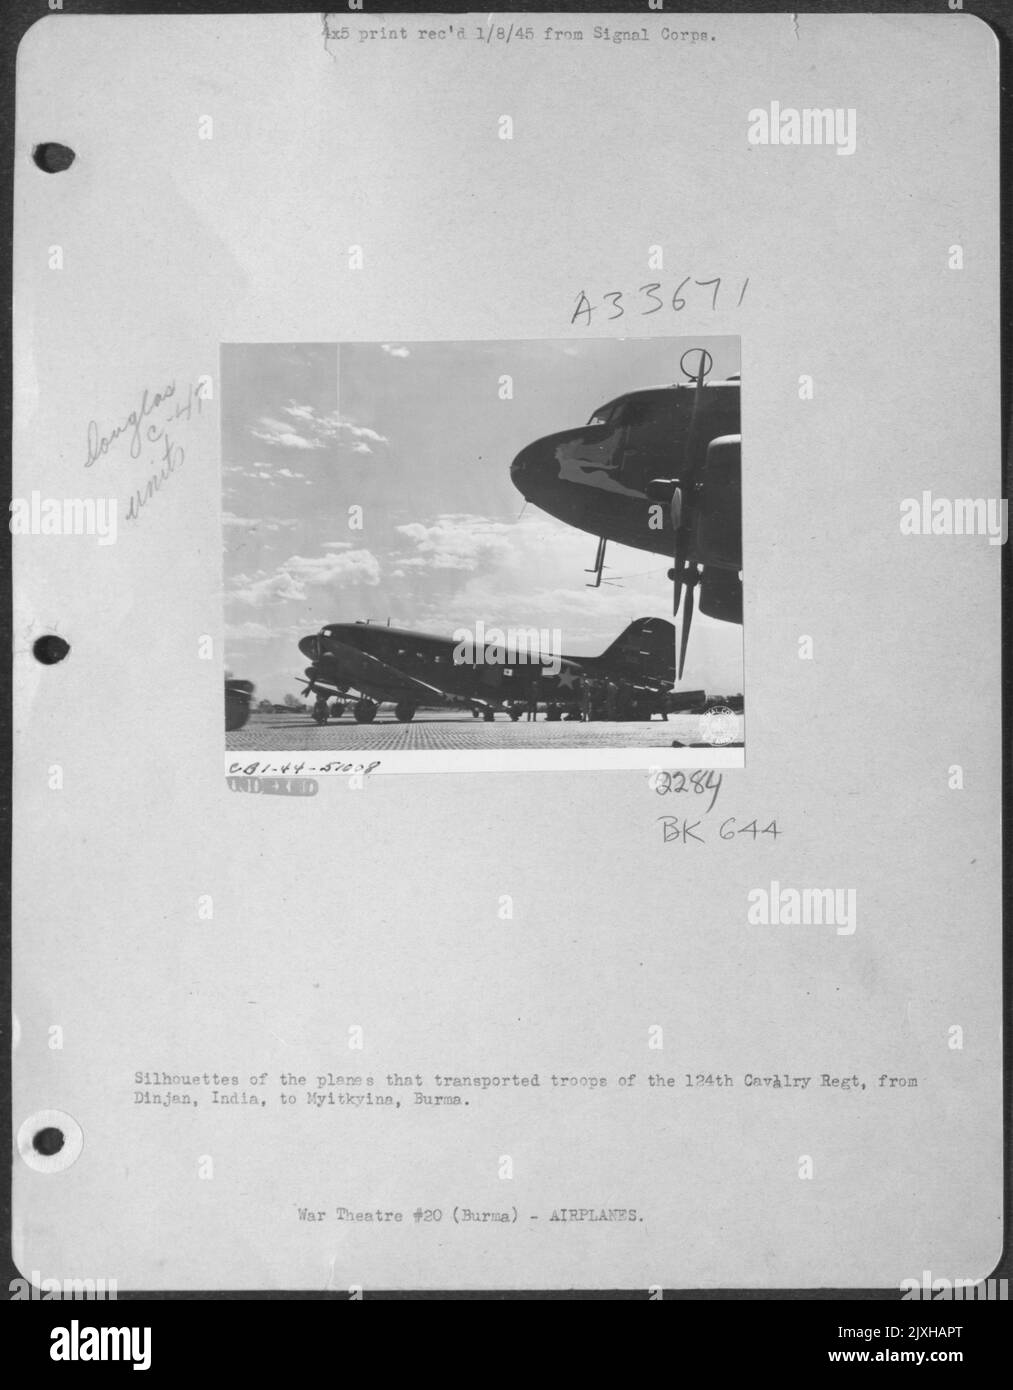 Silhouetten der Flugzeuge, die Truppen der Kavallerie-Regt von 124. von Dinjan, Indien, nach Myitkyina, Burma, transportierten. Stockfoto